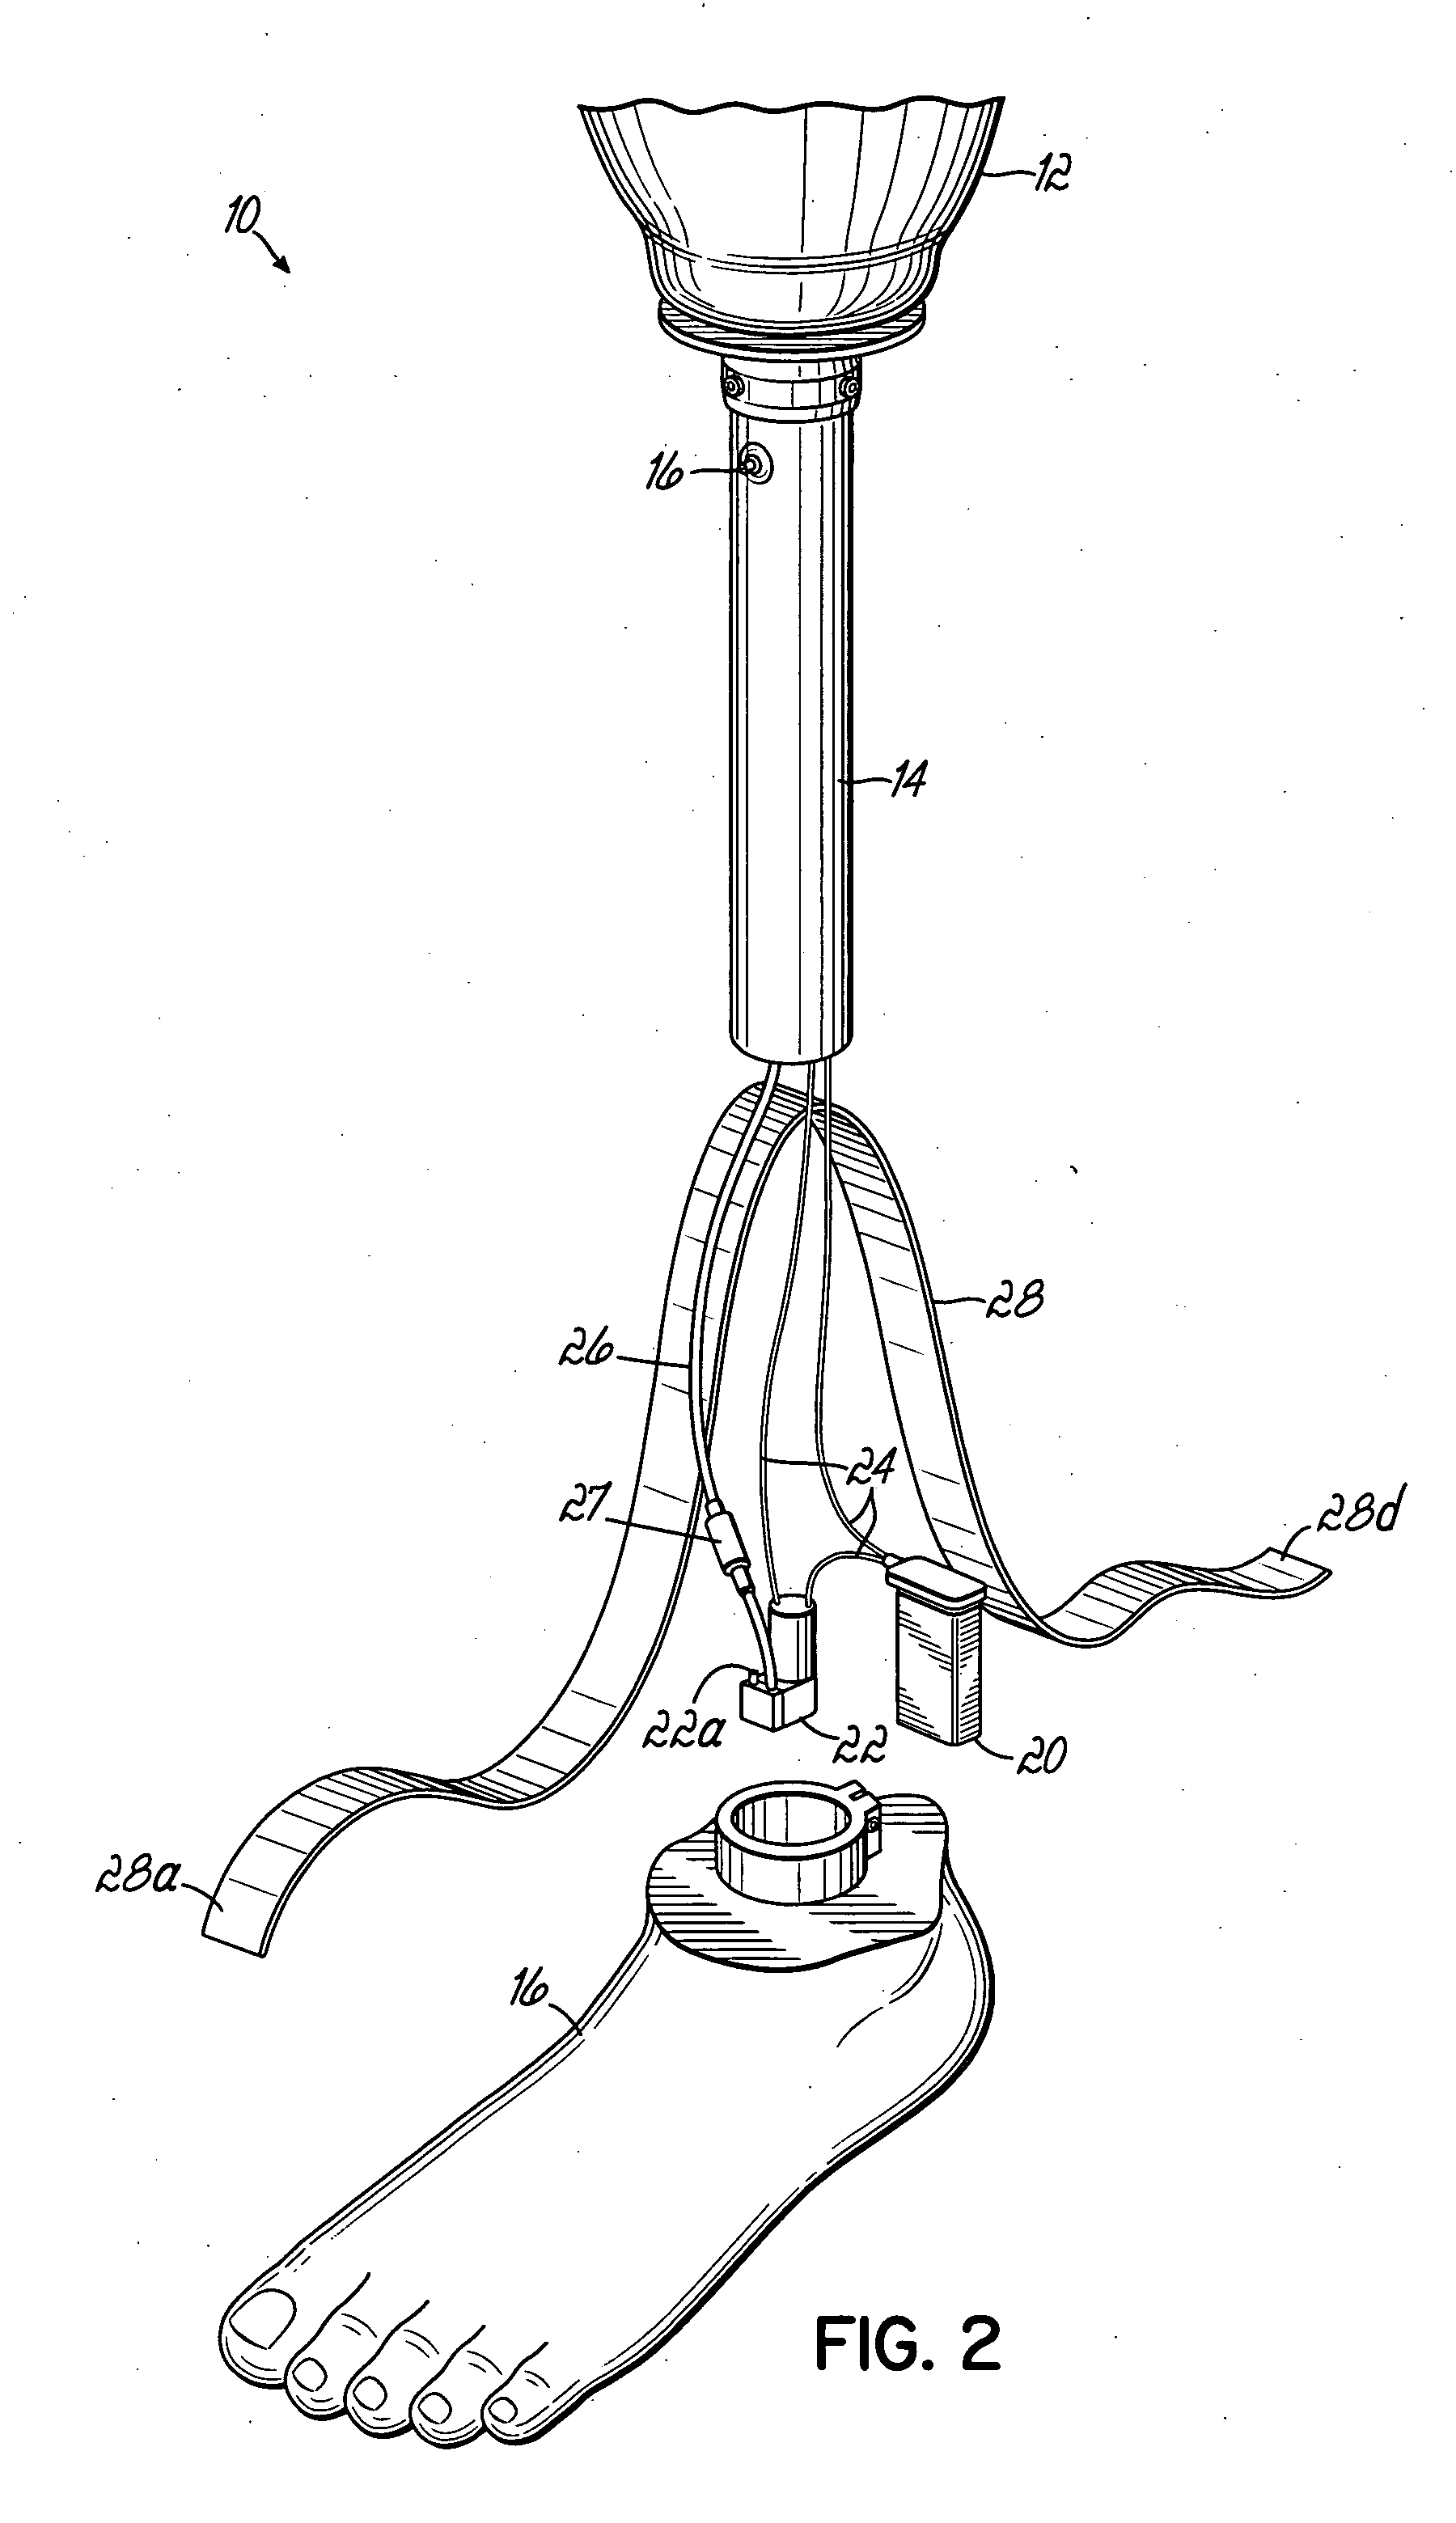 Prosthetic device utilizing electric vacuum pump